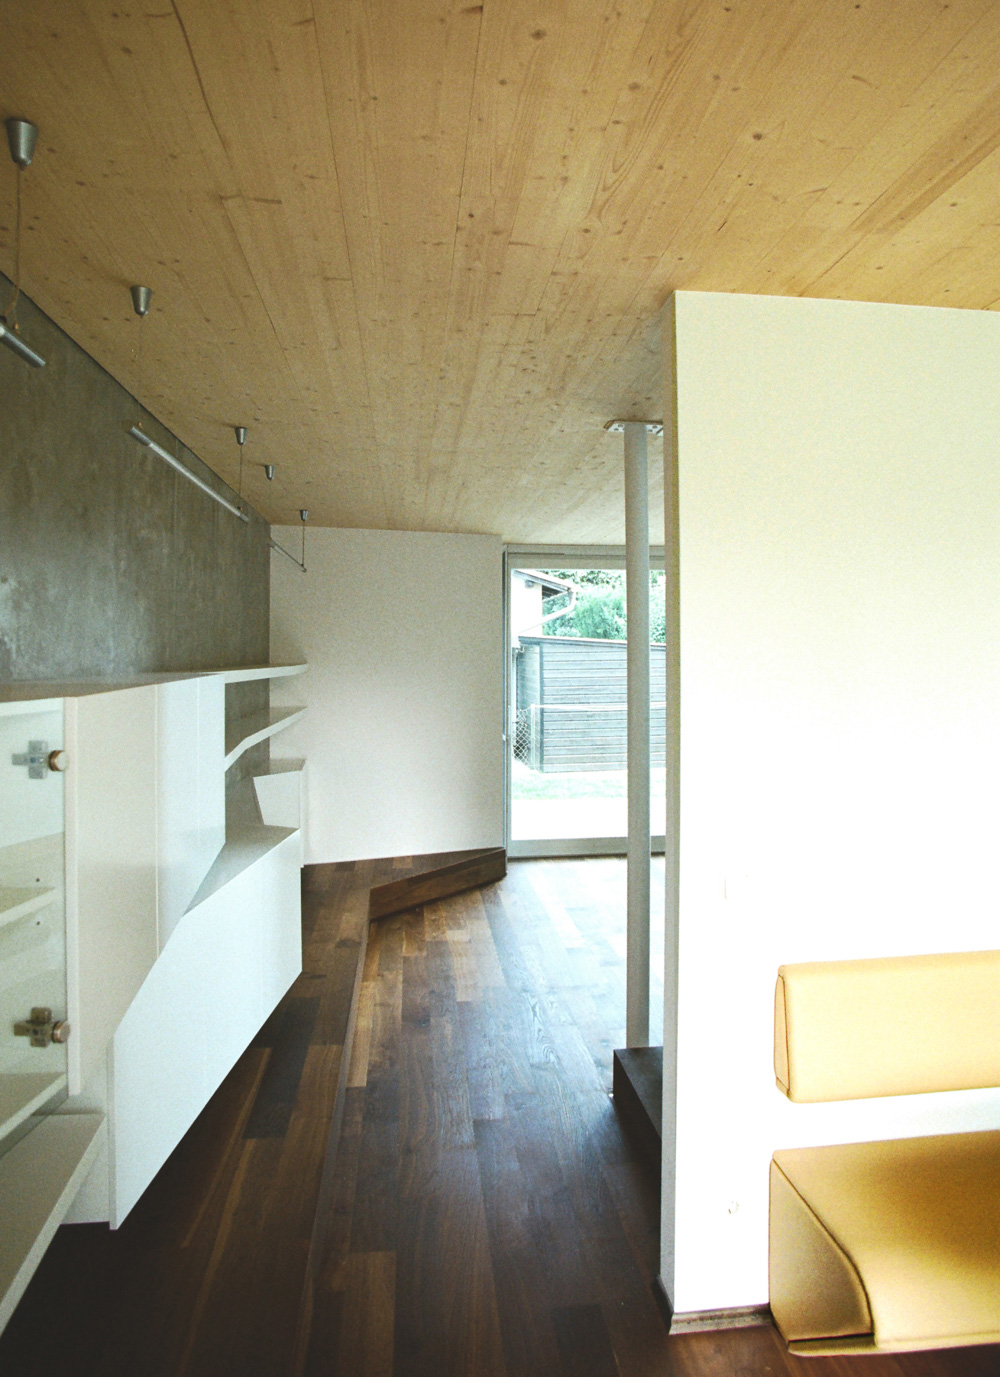 Bild des Wohnzimmers mit integriertem Möbeldesign (Esstisch) von einem Einfamilienhaus das von Architekten geplant wurde